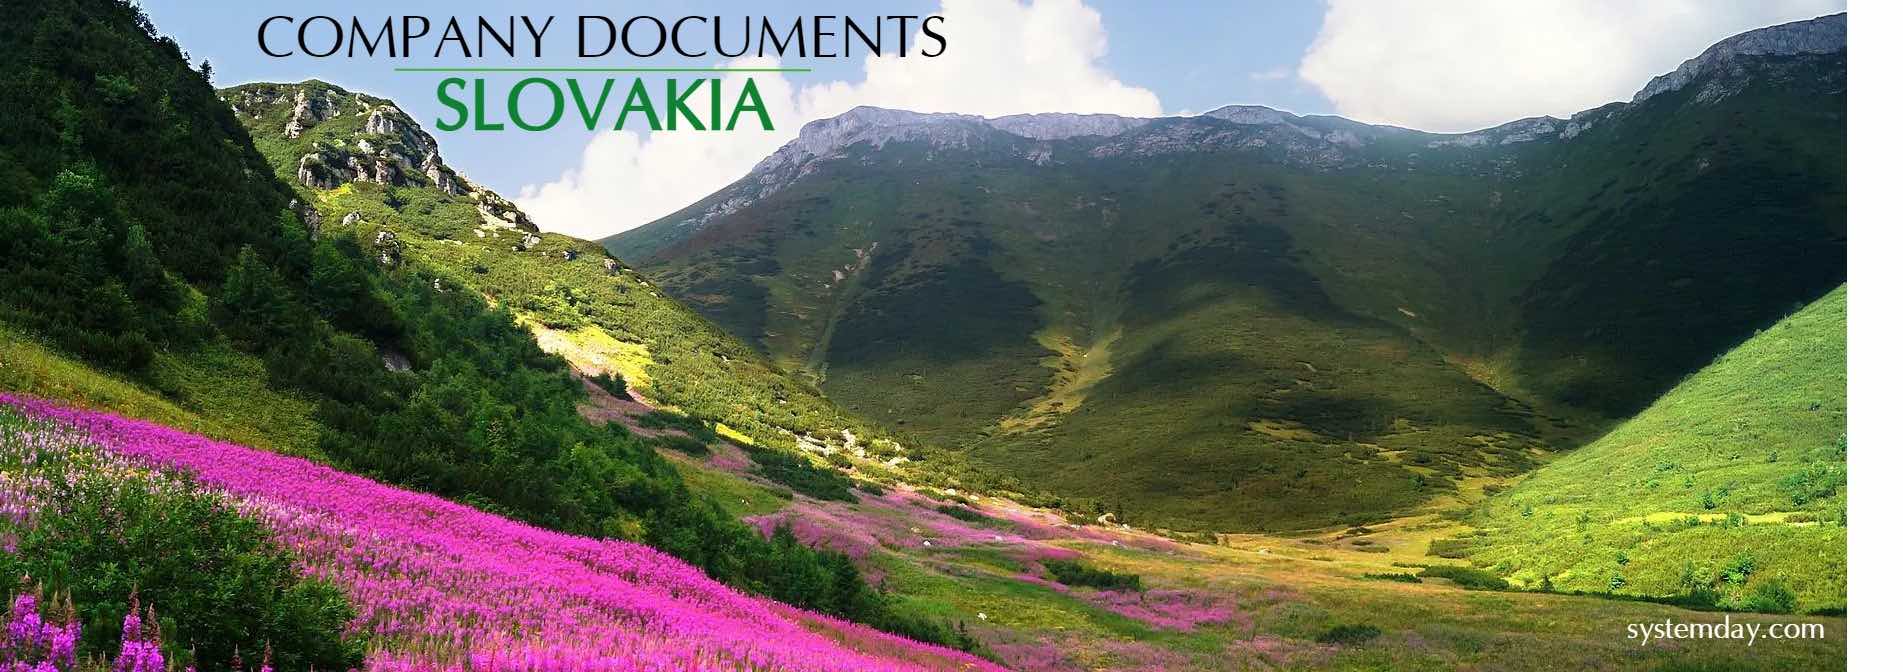 Slovakia Company Documents